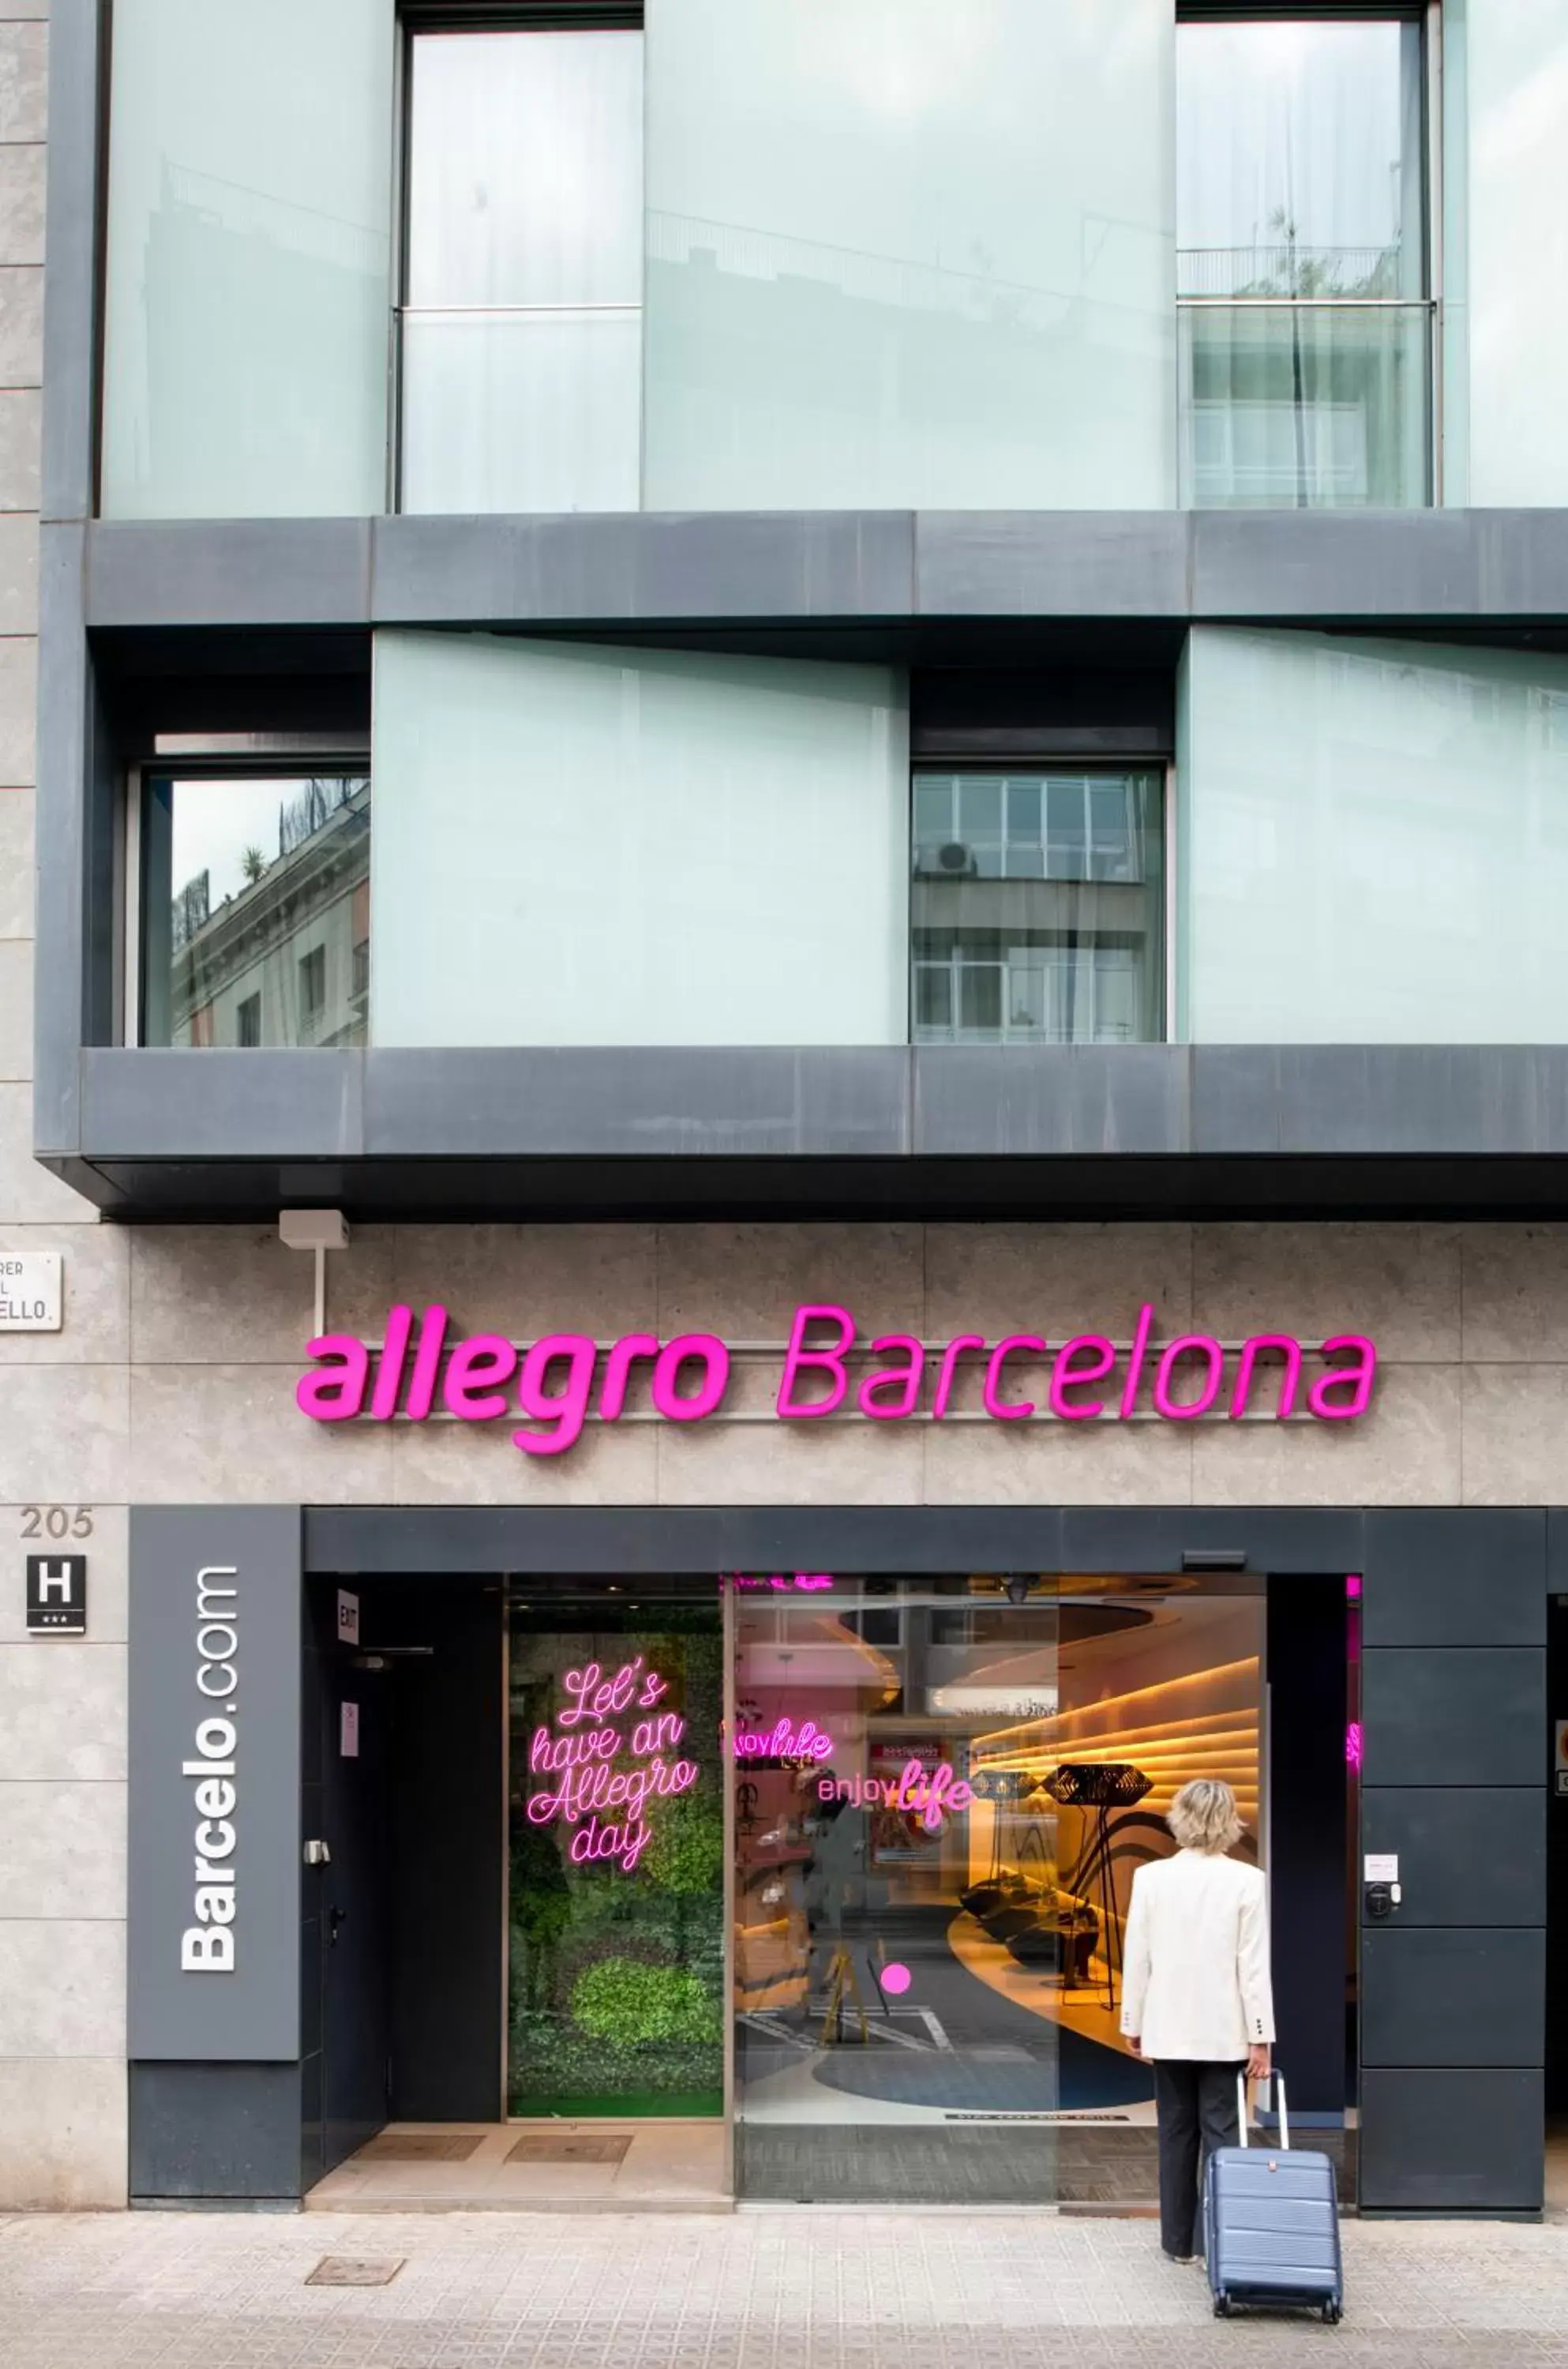 Facade/entrance in Allegro Barcelona